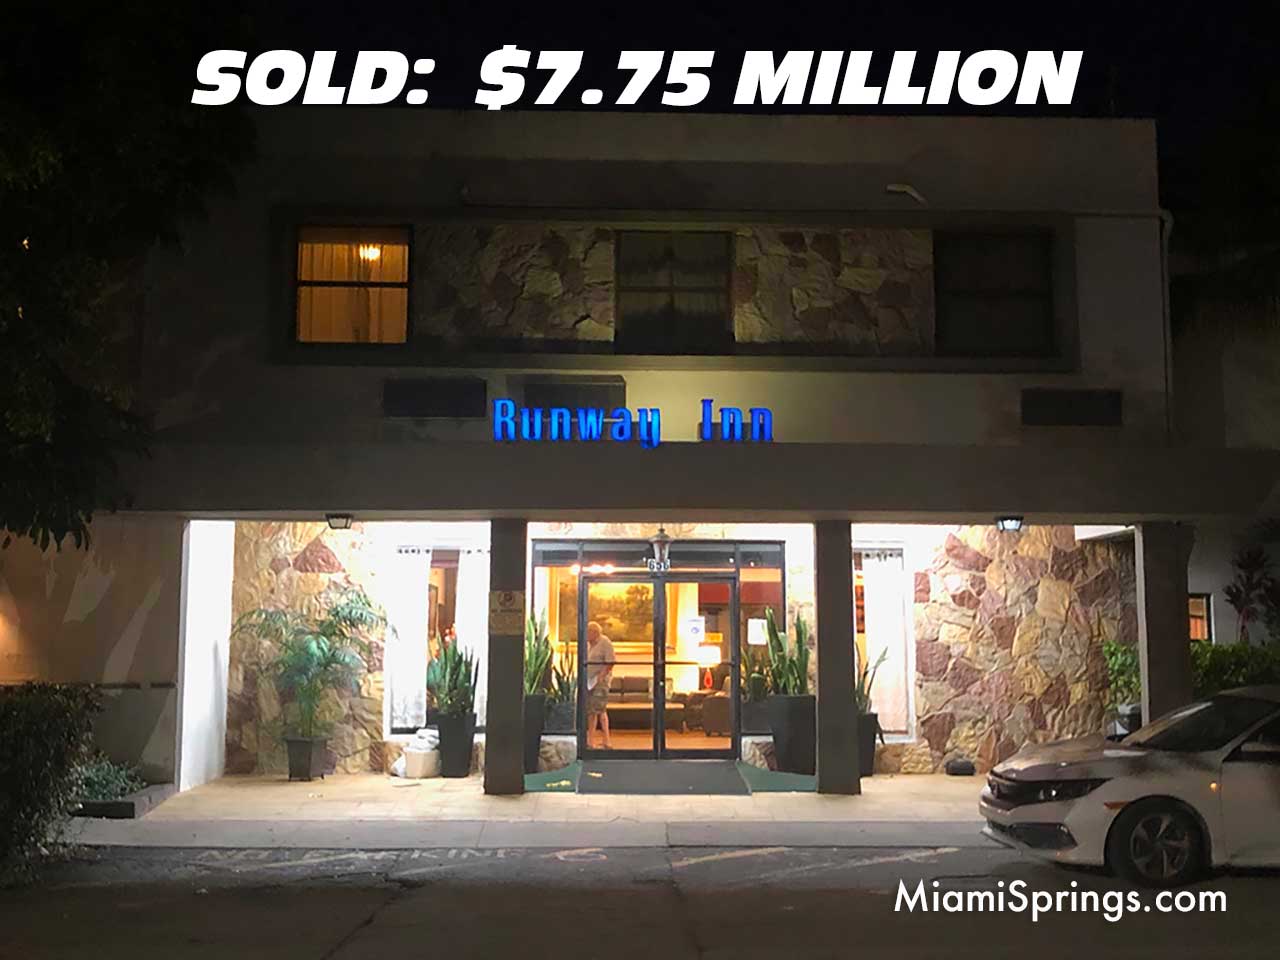 Runway Inn Sold for $7.75 Million